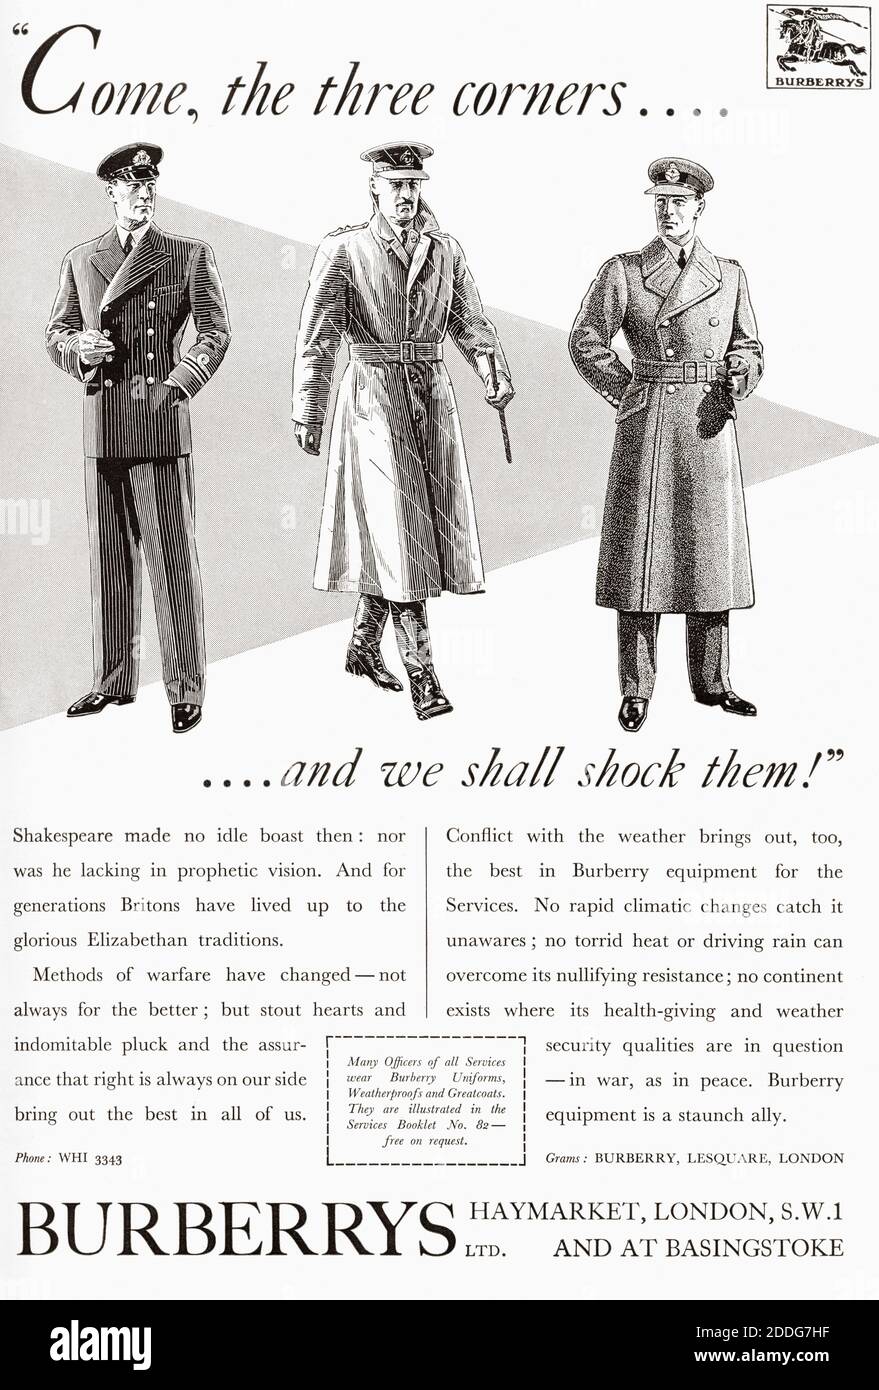 Une publicité de 1940 pour Burberry's Equipment for the Services. De navires de guerre britanniques, publié en 1940. Banque D'Images